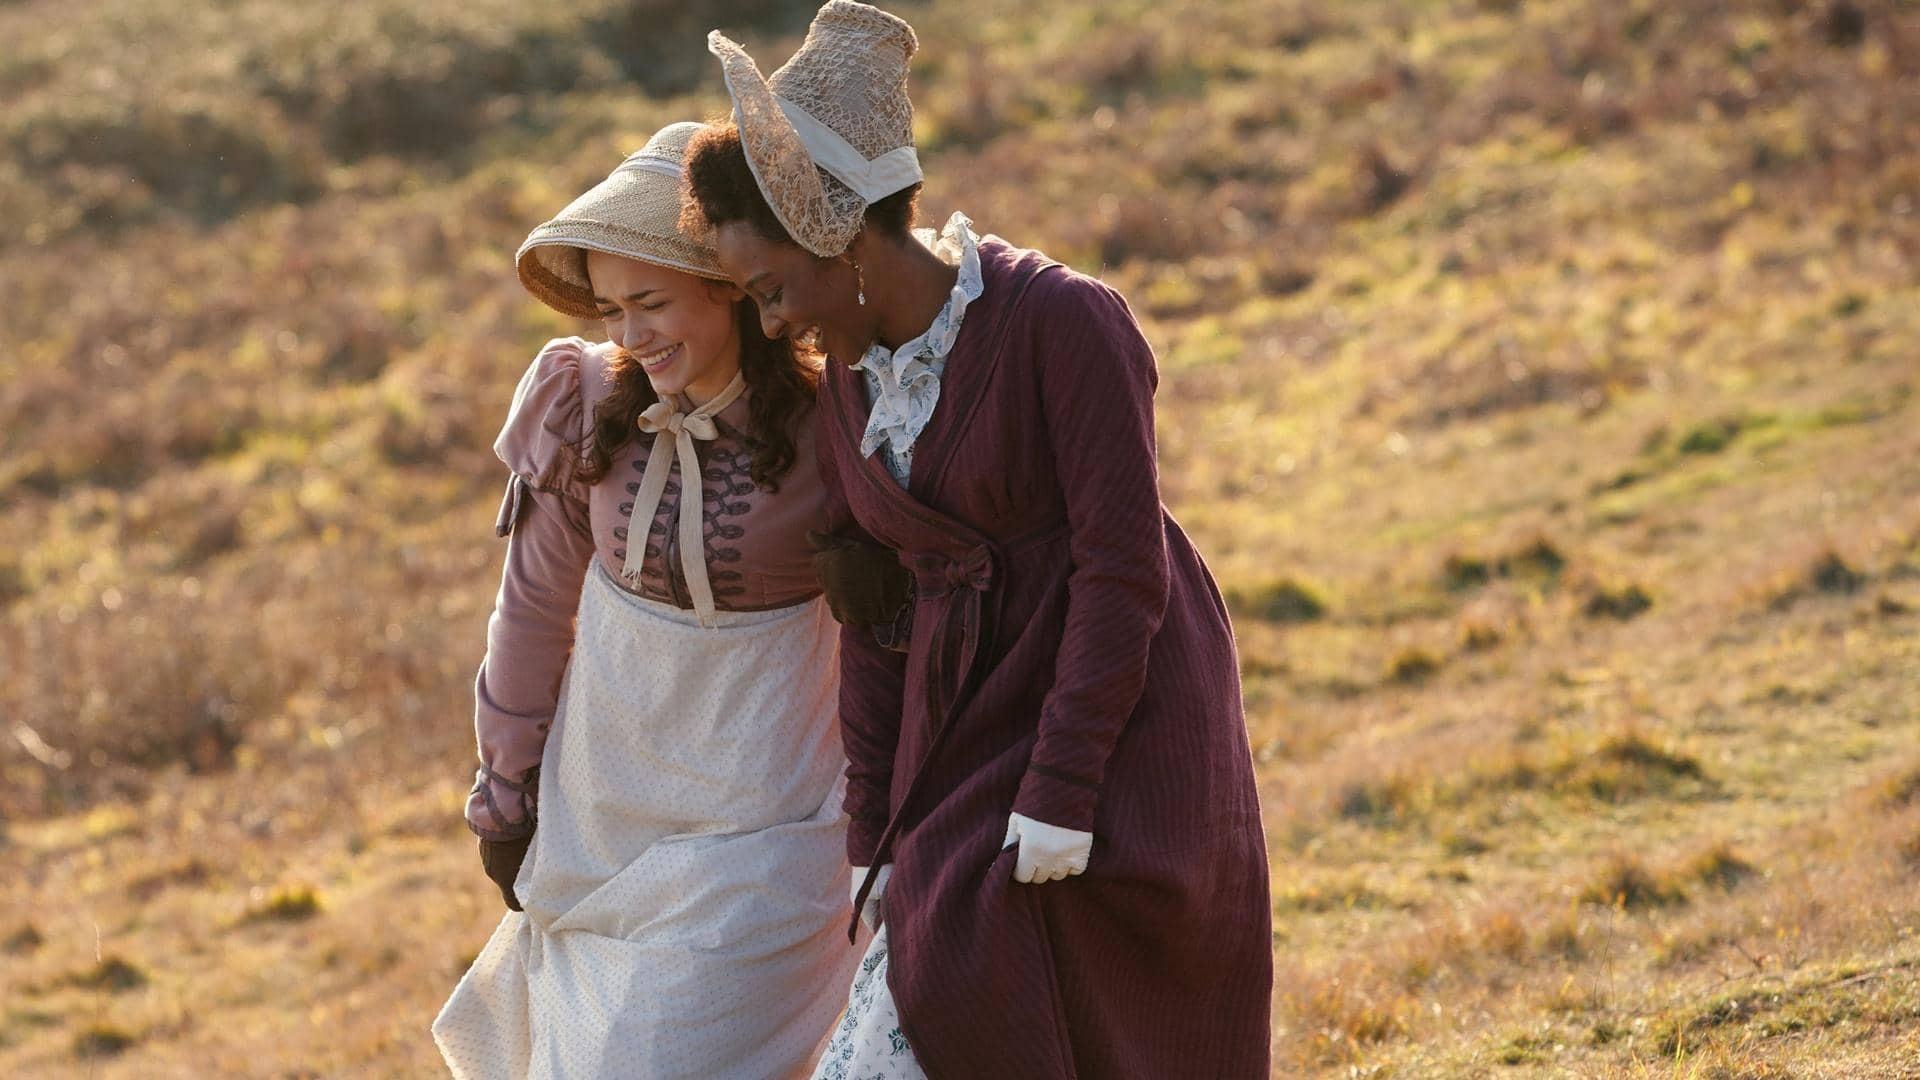 The leads of Sanditon, two woman wearing Regency era fashions walk in a field